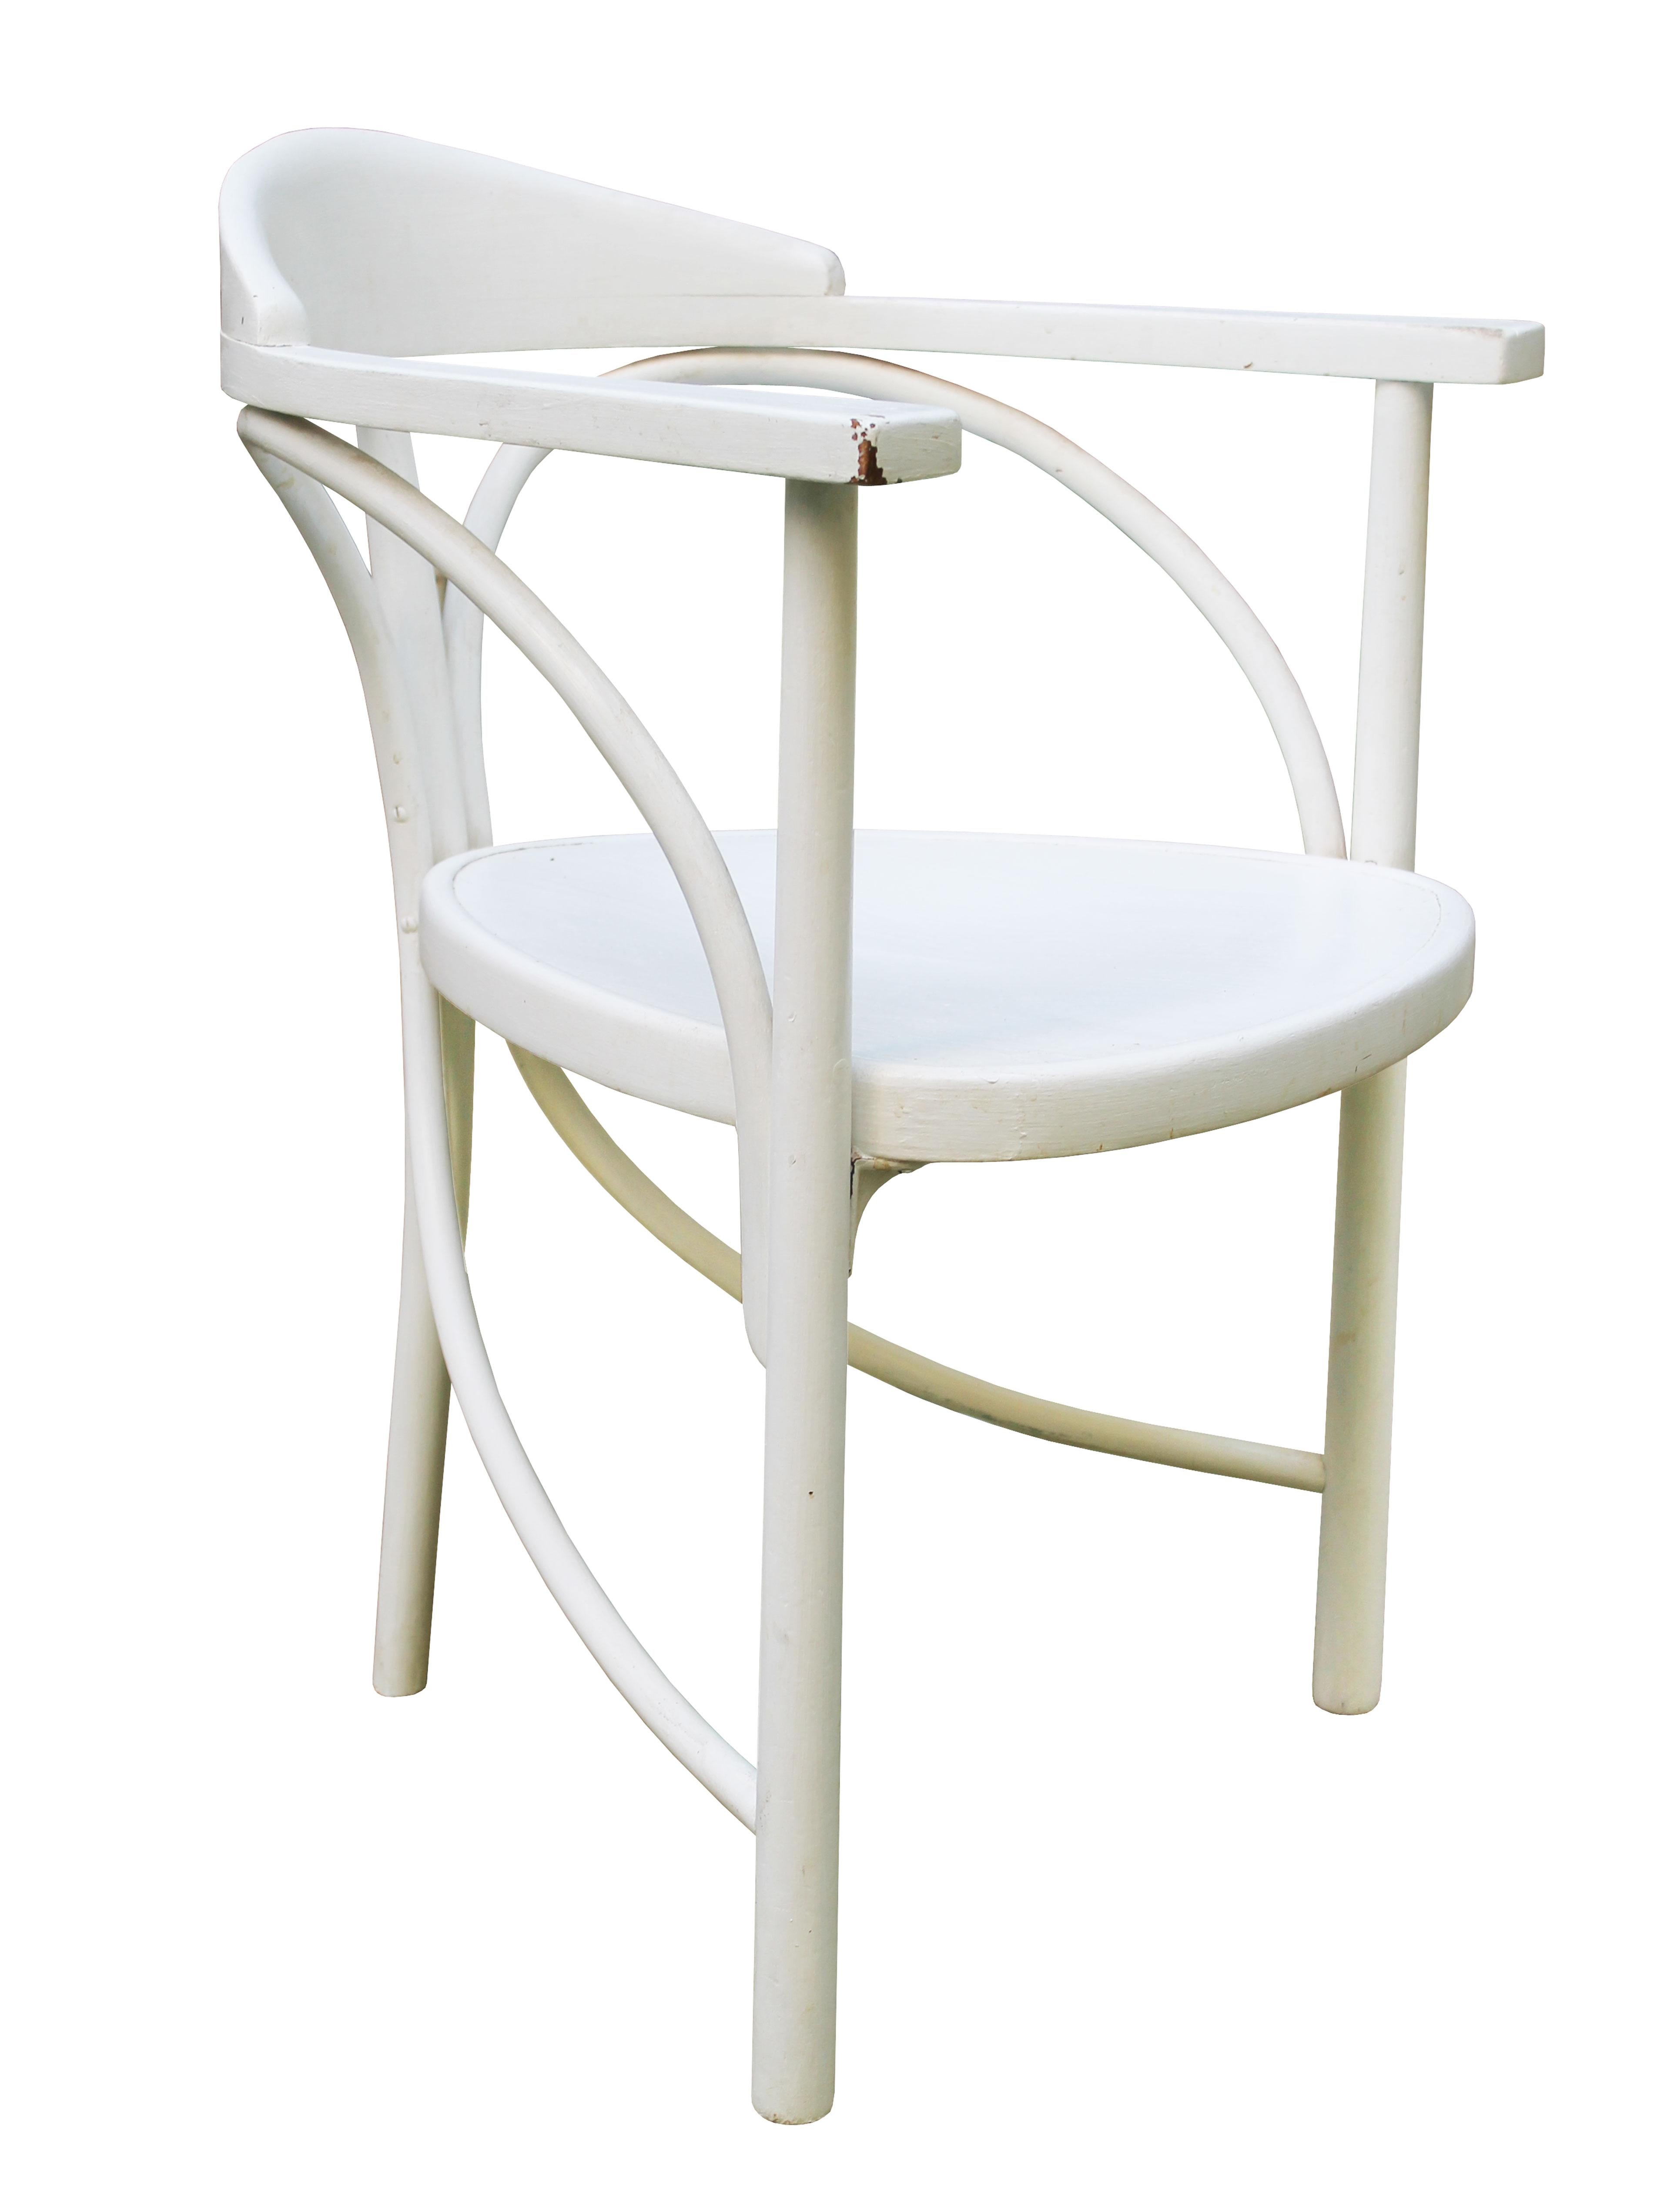 Cette rare chaise tripode Art nouveau Thonet a été conçue en 1904. Dans le catalogue Thonet de 1906 (voir image ci-dessous), elle est décrite comme 